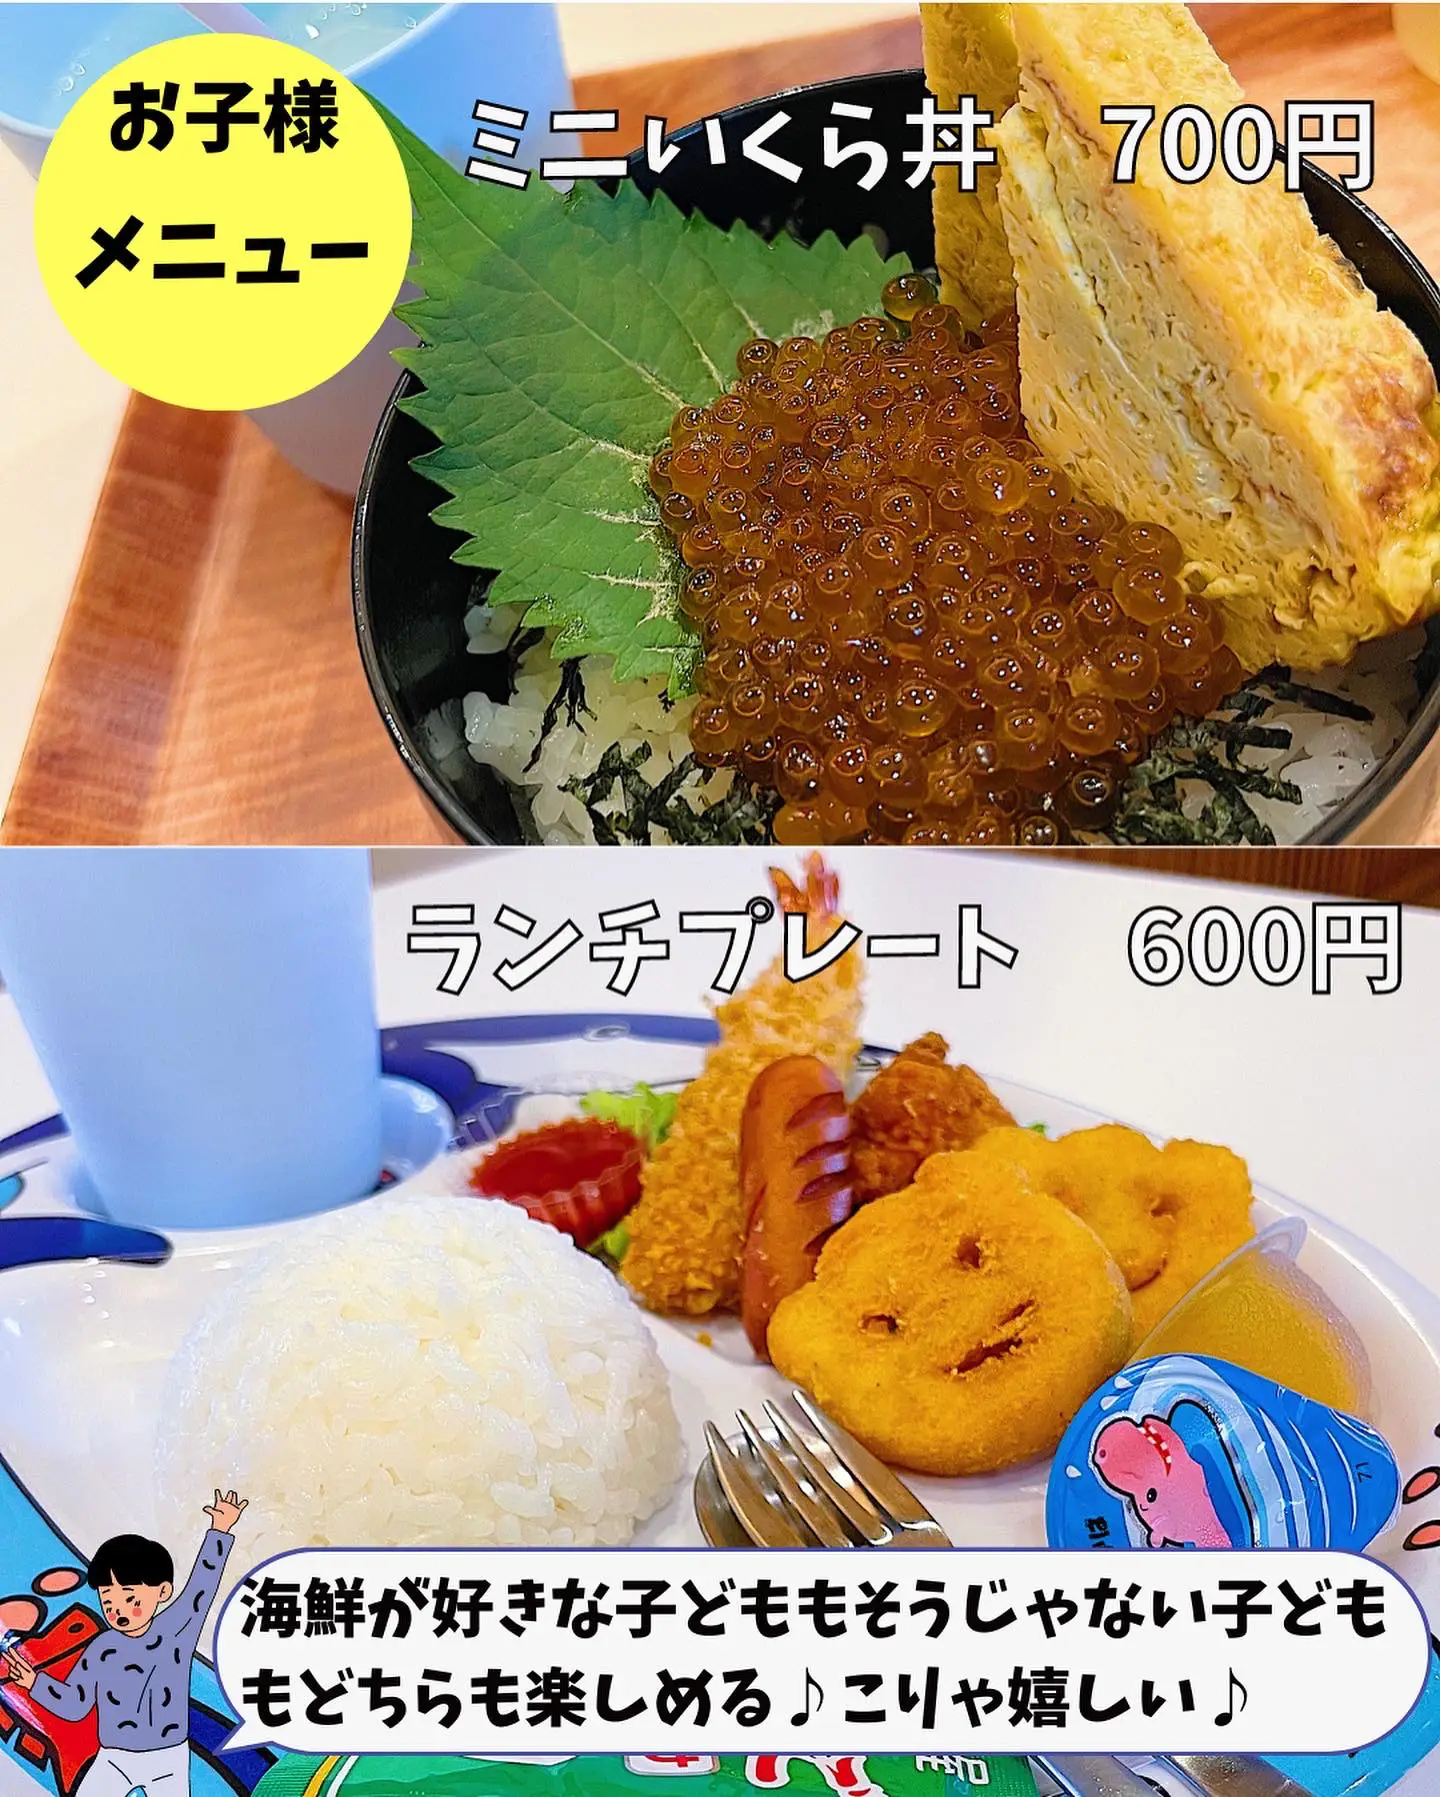 もはや芸術な海鮮丼【久喜市】 | 子どもとランチ@埼玉、群馬が投稿した